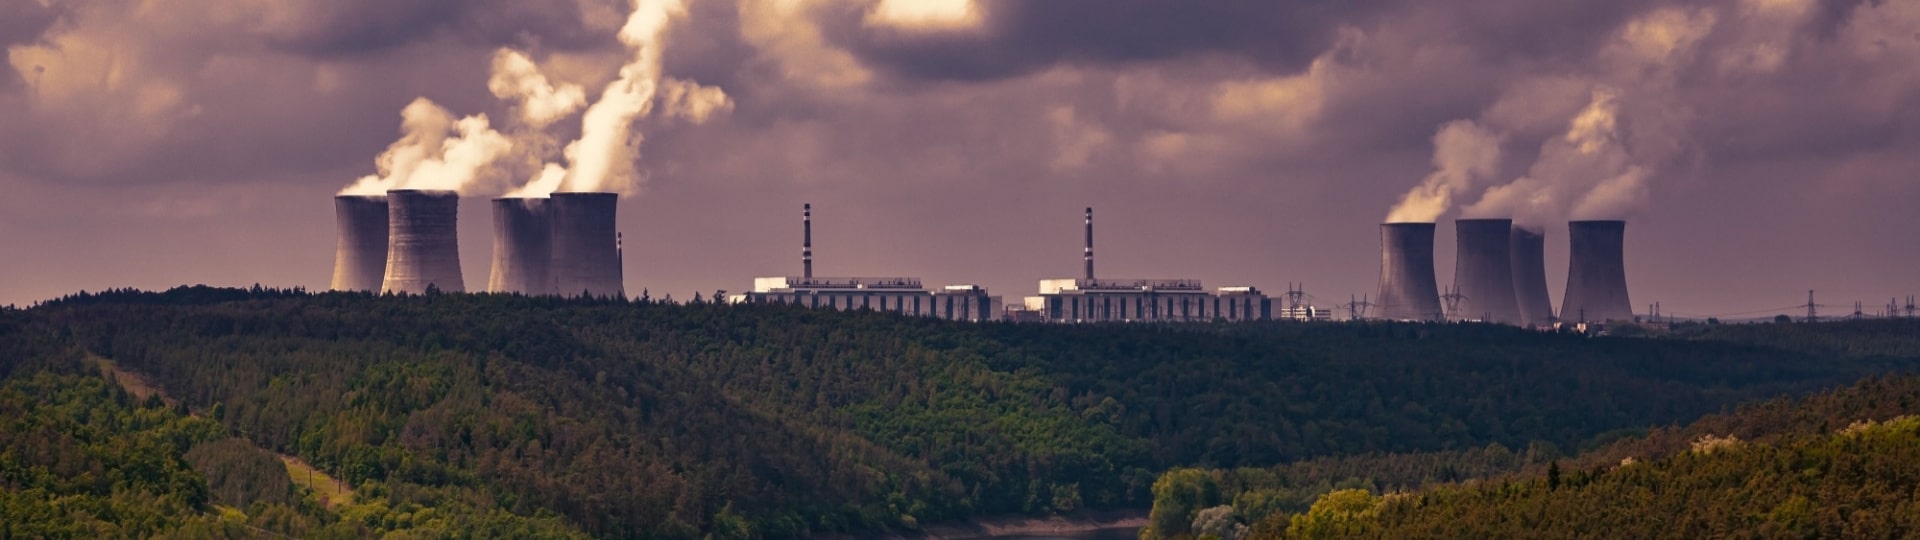 ČEZ obdržel na stavbu nového jaderného bloku v Dukovanech tři nabídky